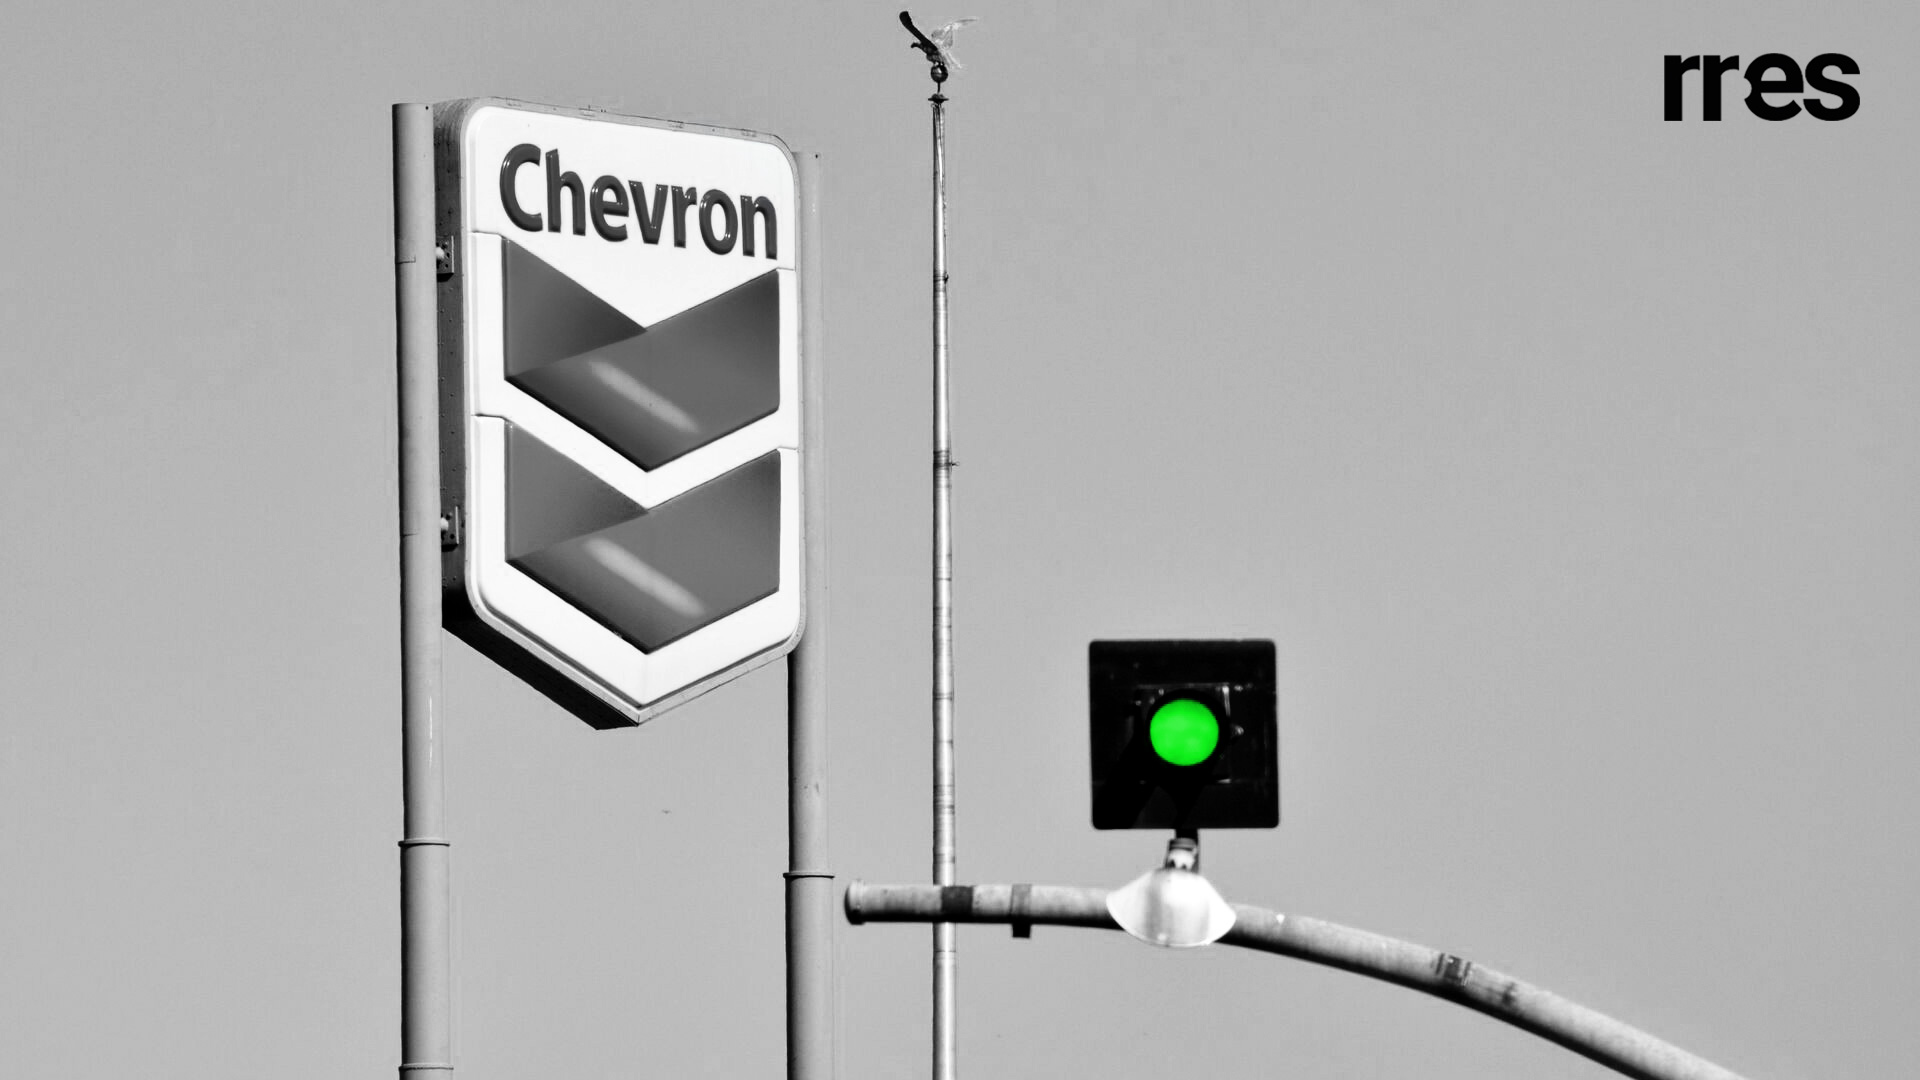 #PedagogíaEconómica | ¿Quiere Ud. entender en qué consiste la licencia a Chevron?, por Víctor Álvarez R.